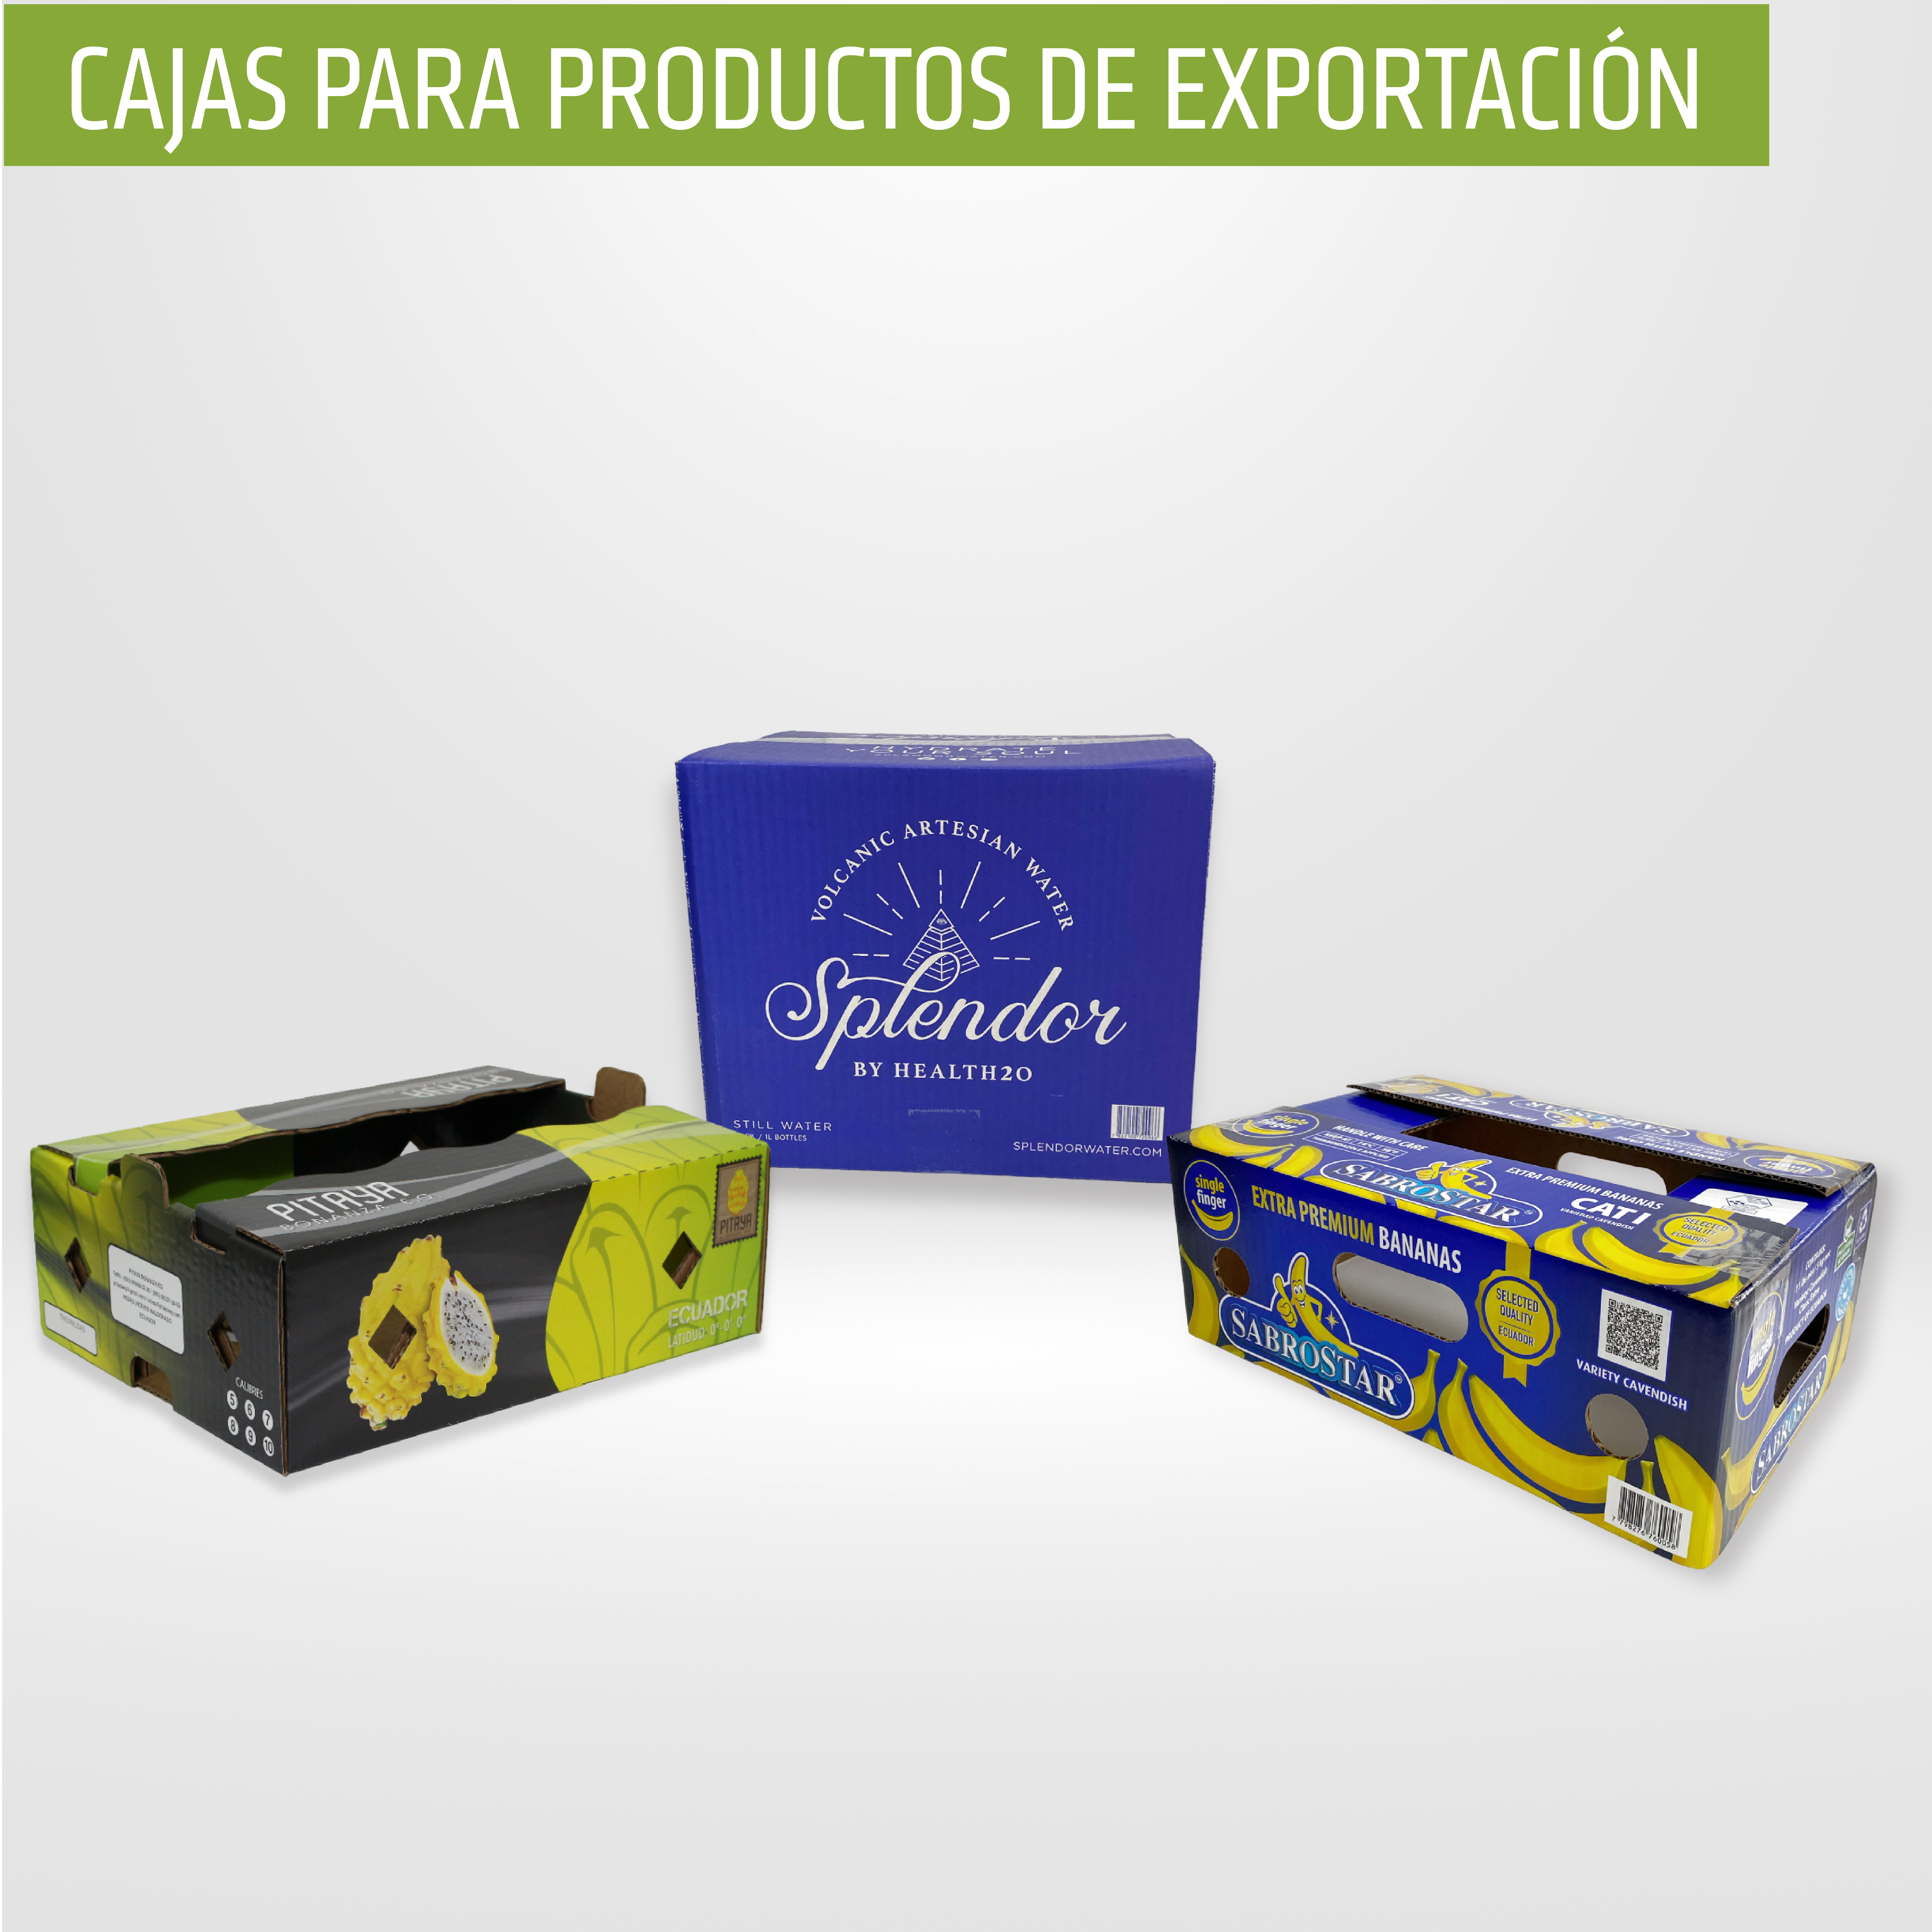 Cajas para productos de exportación